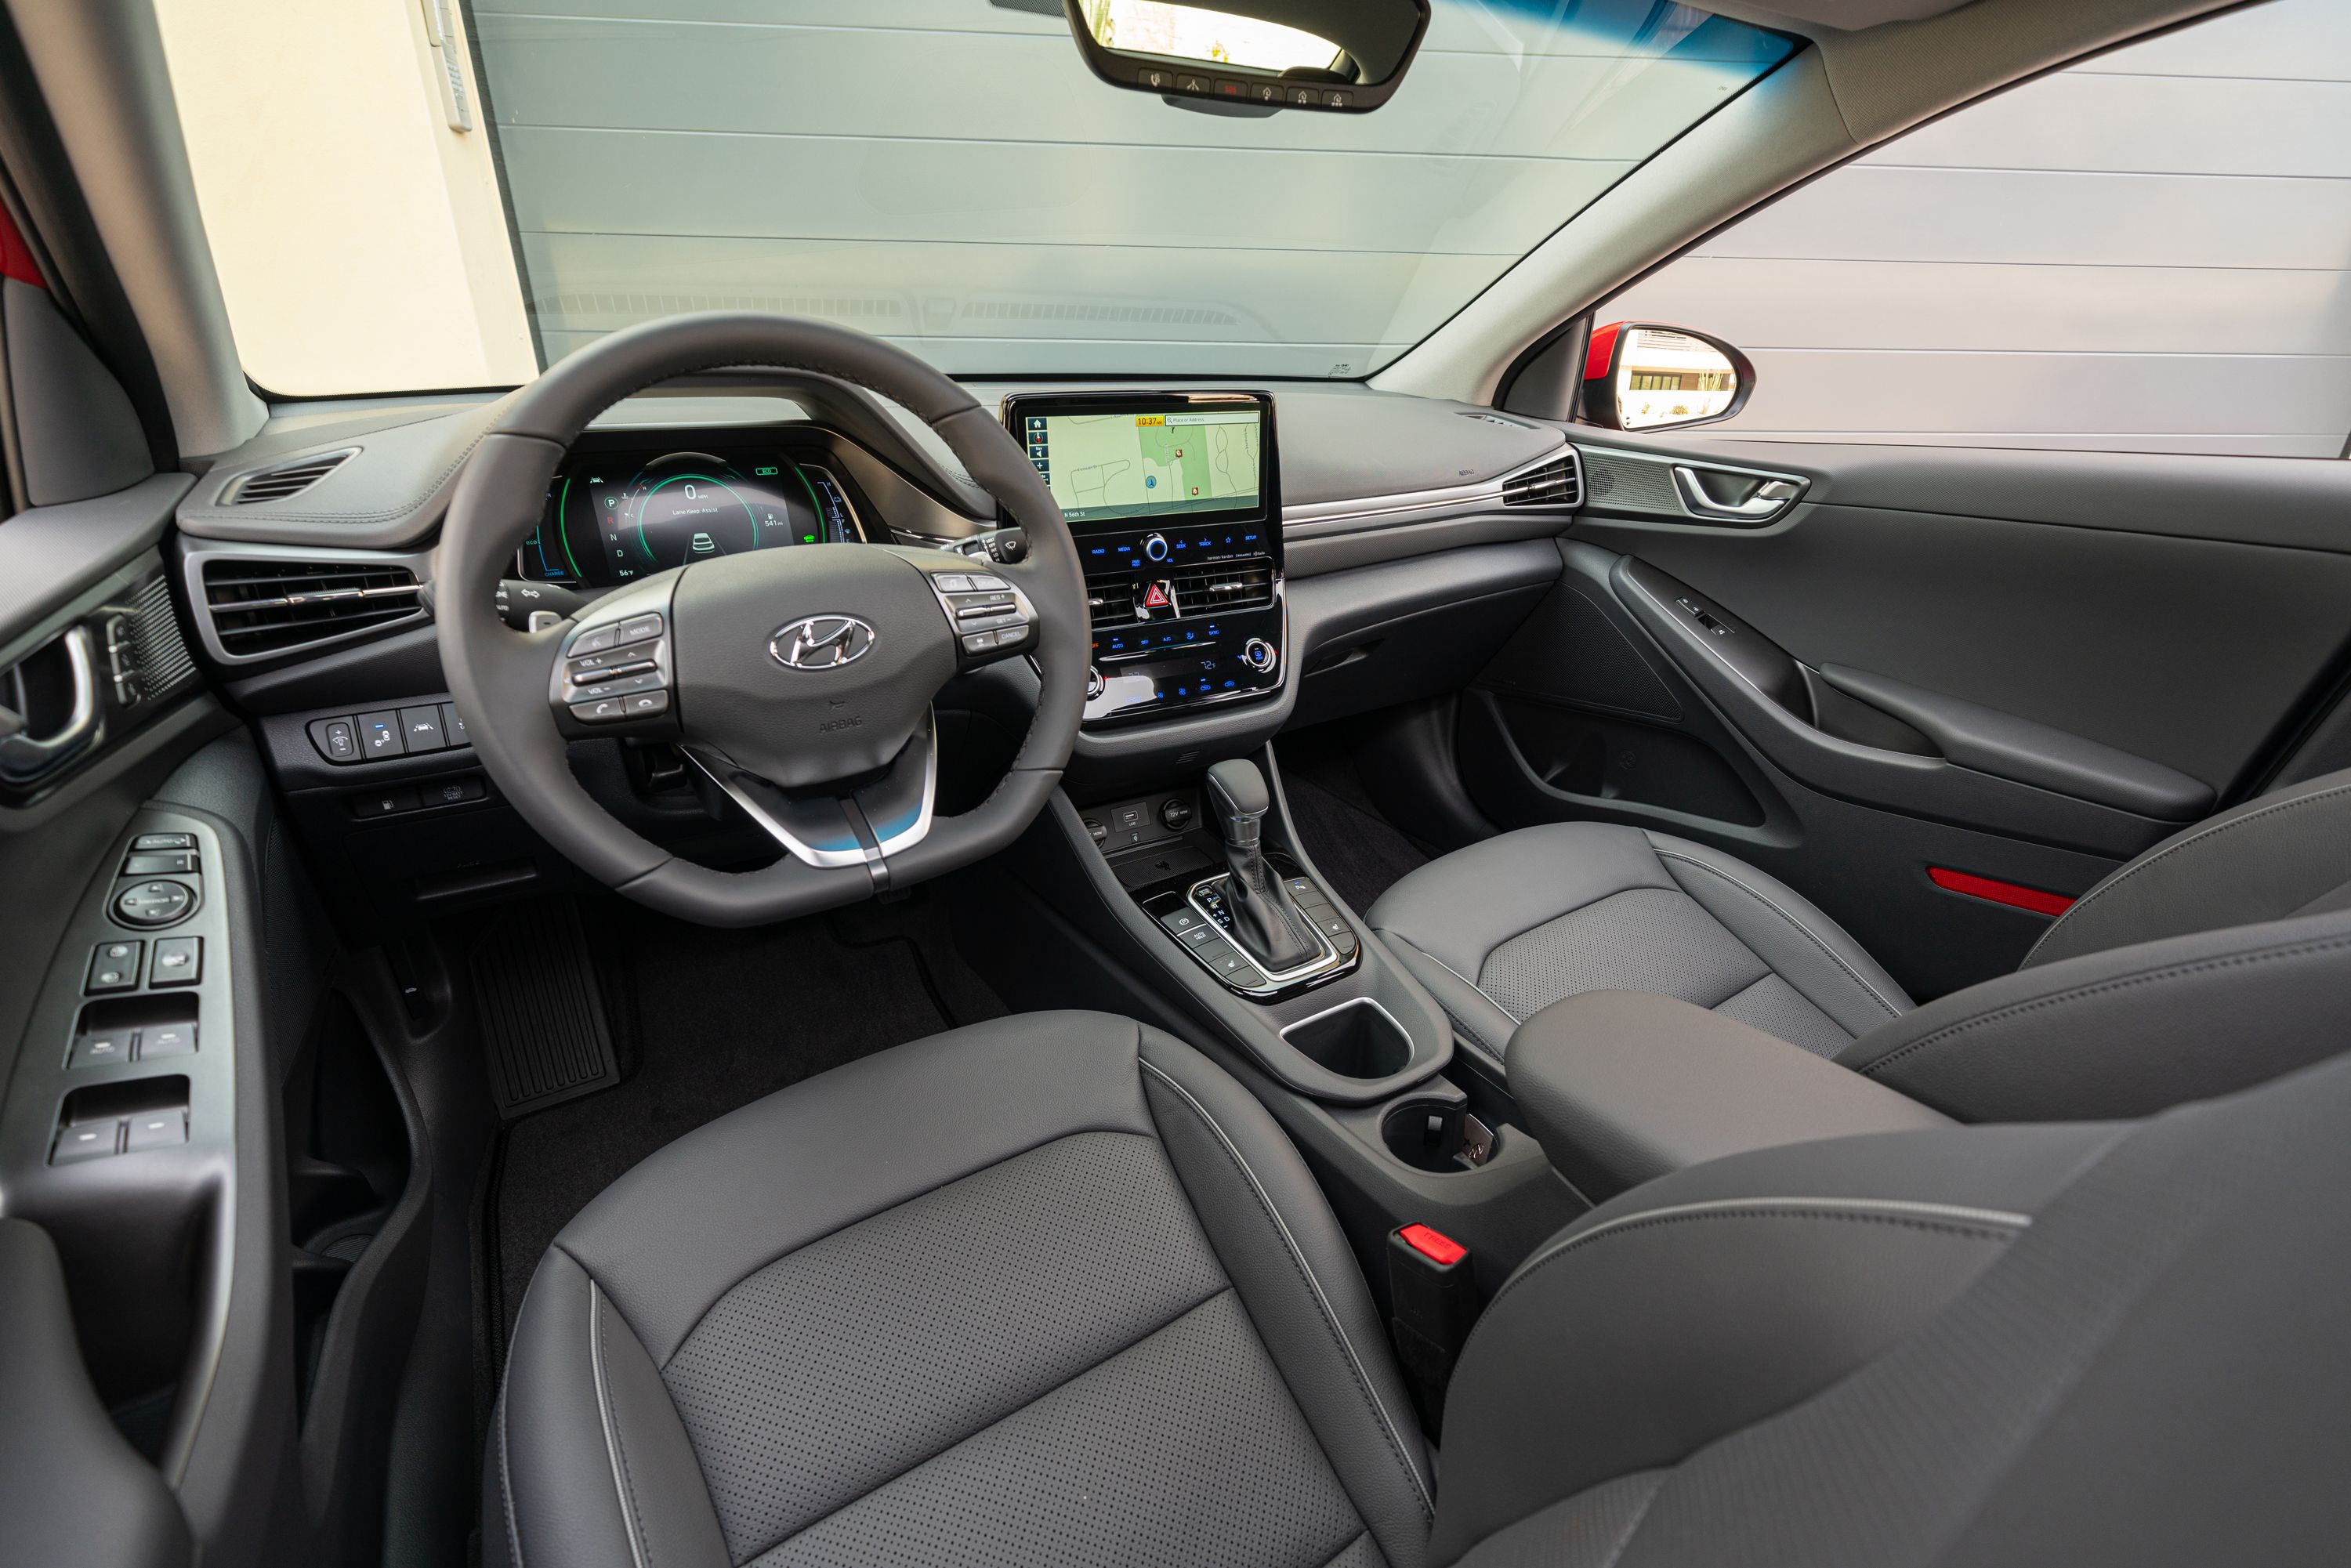 2021 Hyundai Ioniq Hybrid vs. 2021 Kia Niro Hybrid: Which Is